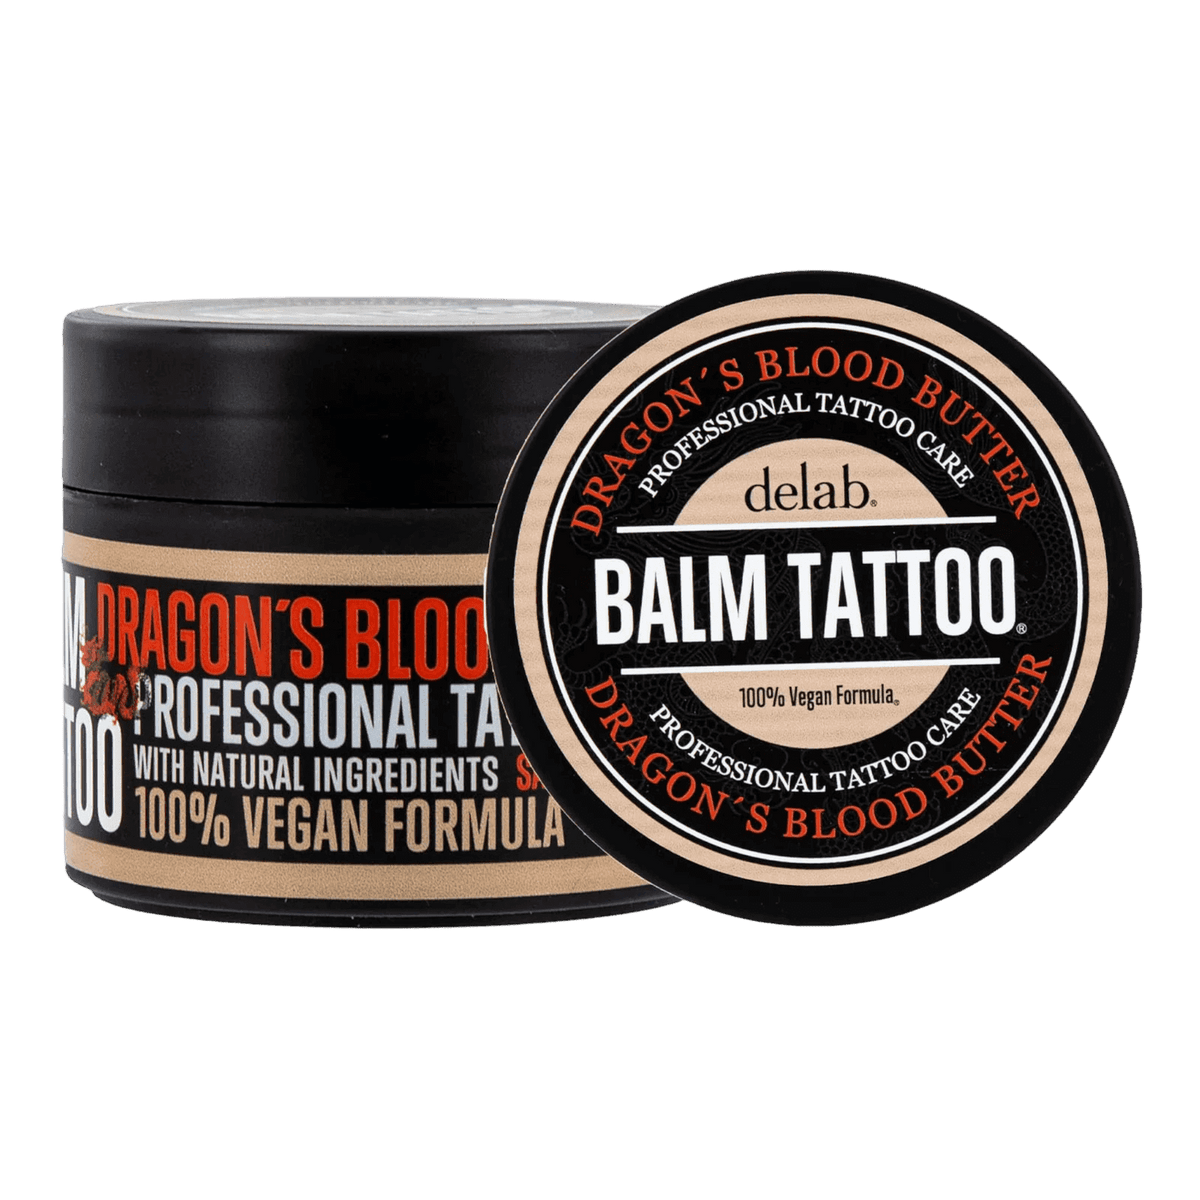 Balsam Tattoo Dragon's Blood Butter Butter